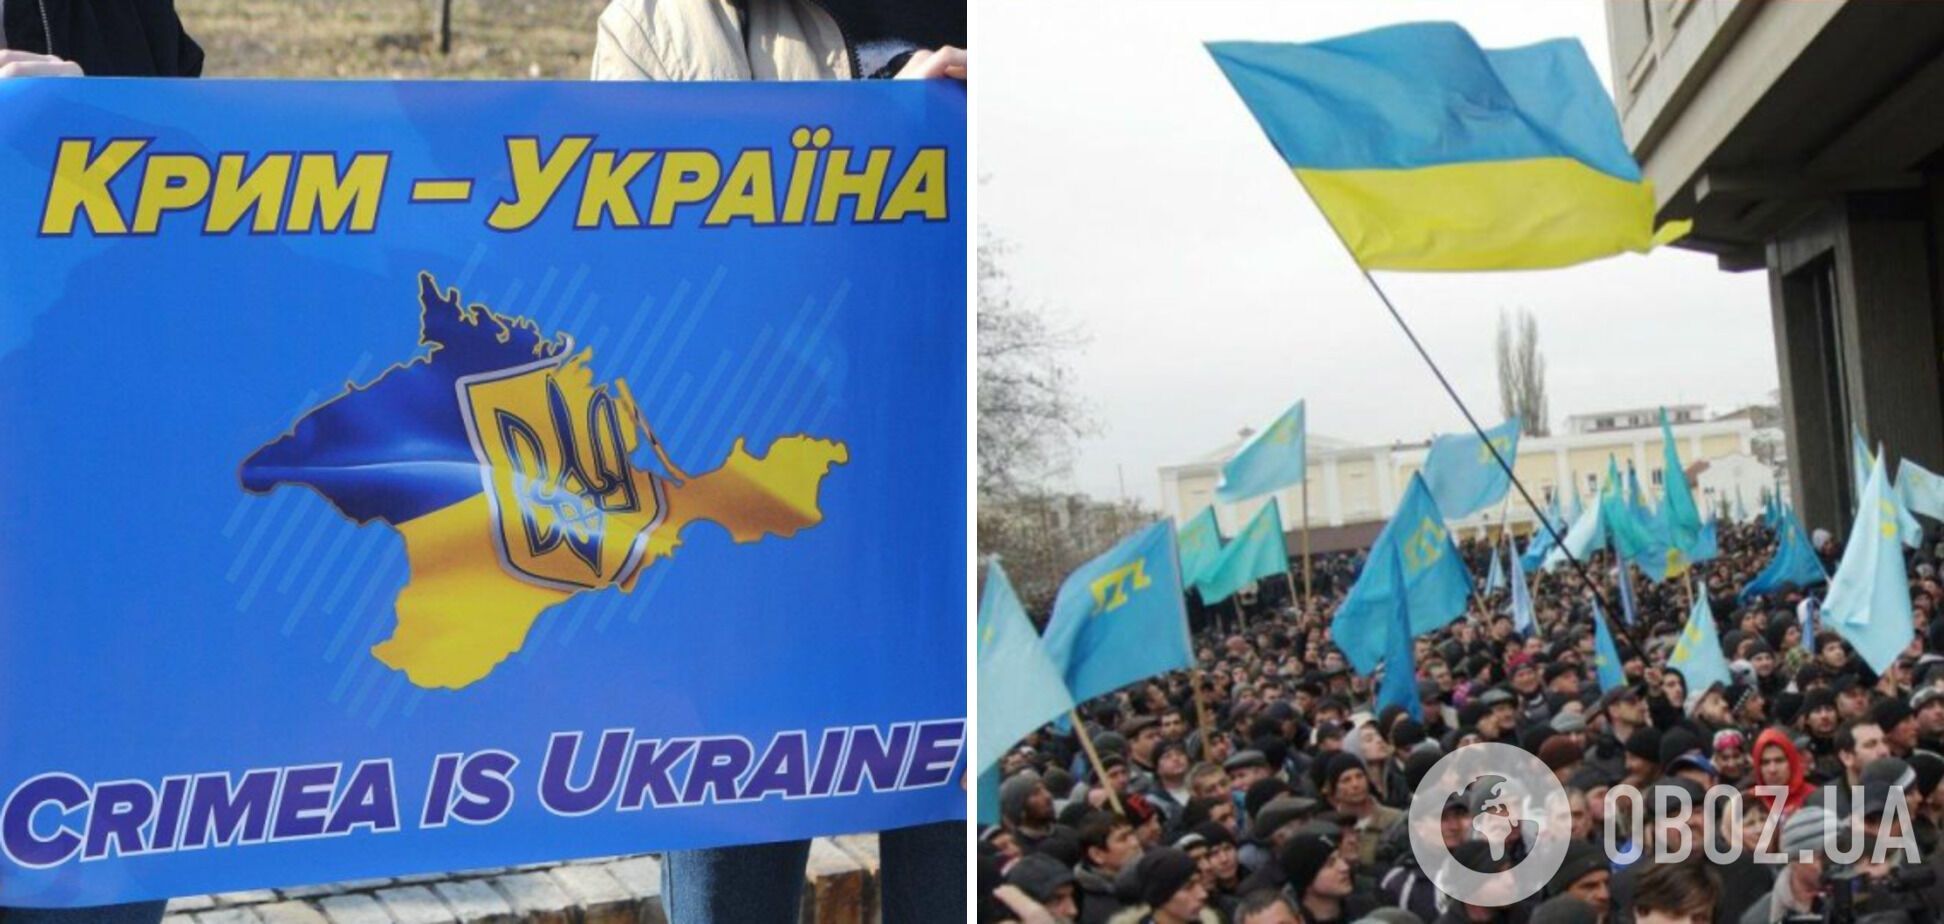 Партизаны призвали жителей Крыма держаться подальше от военных объектов